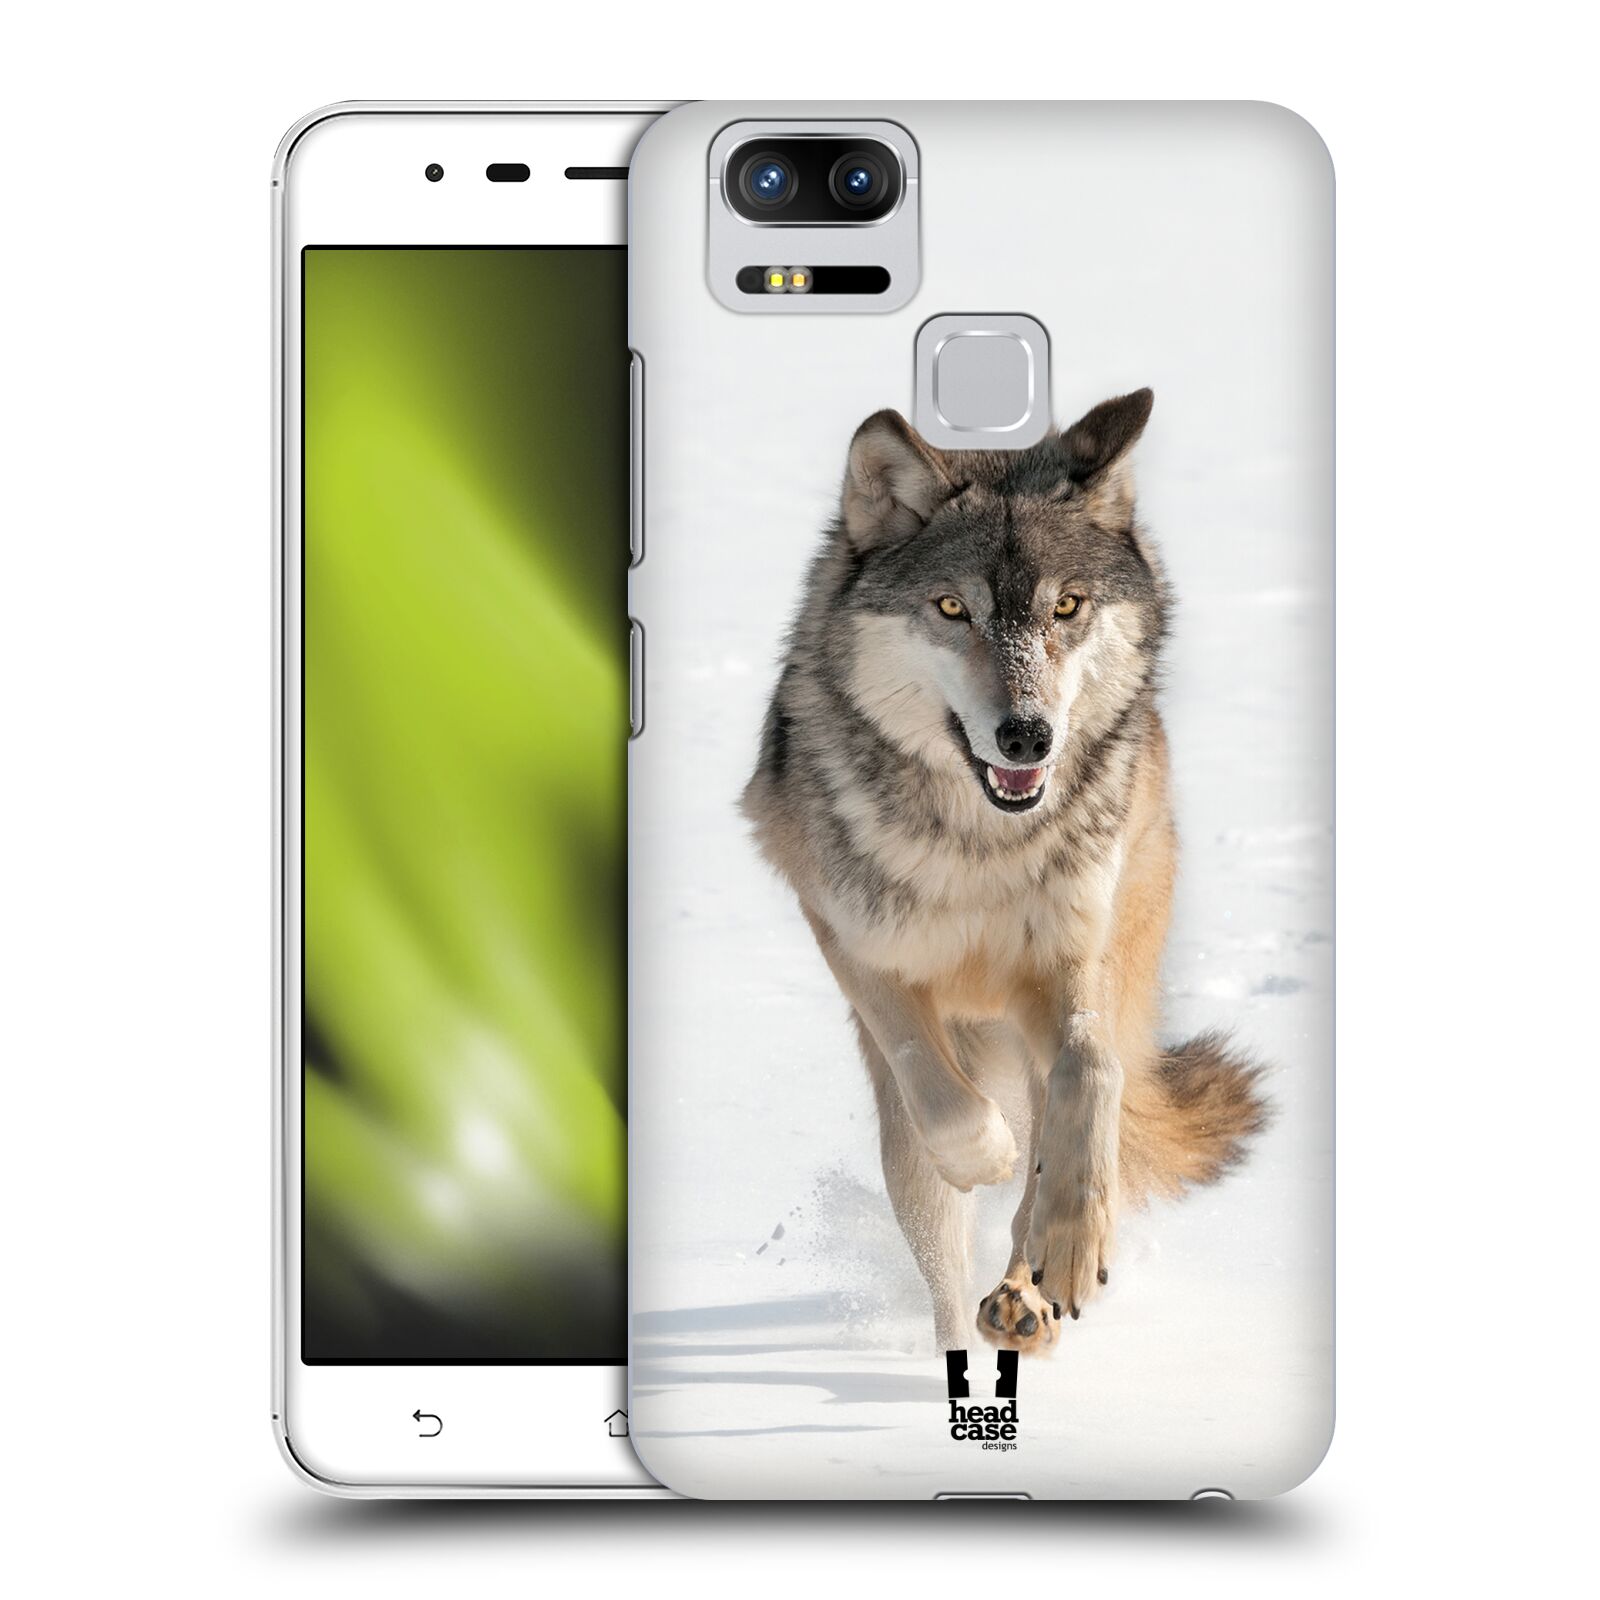 HEAD CASE plastový obal na mobil Asus Zenfone 3 Zoom ZE553KL vzor Divočina, Divoký život a zvířata foto BĚŽÍCÍ VLK